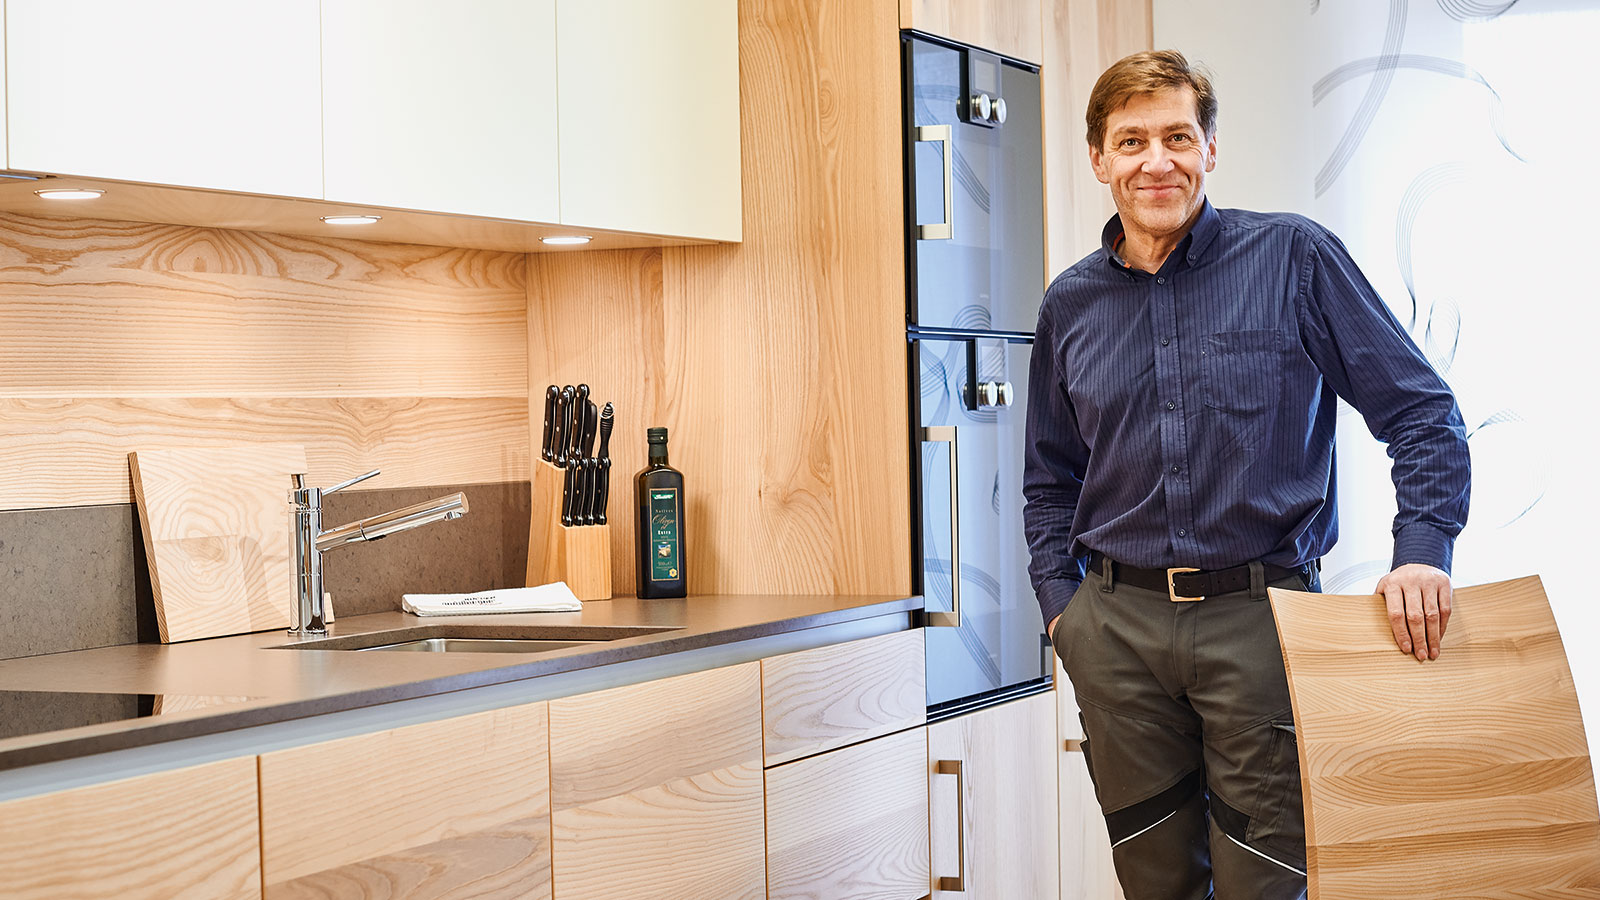 Cozinhas personalizadas: a carpintaria de Martin Geisberger valoriza a qualidade acima de tudo.